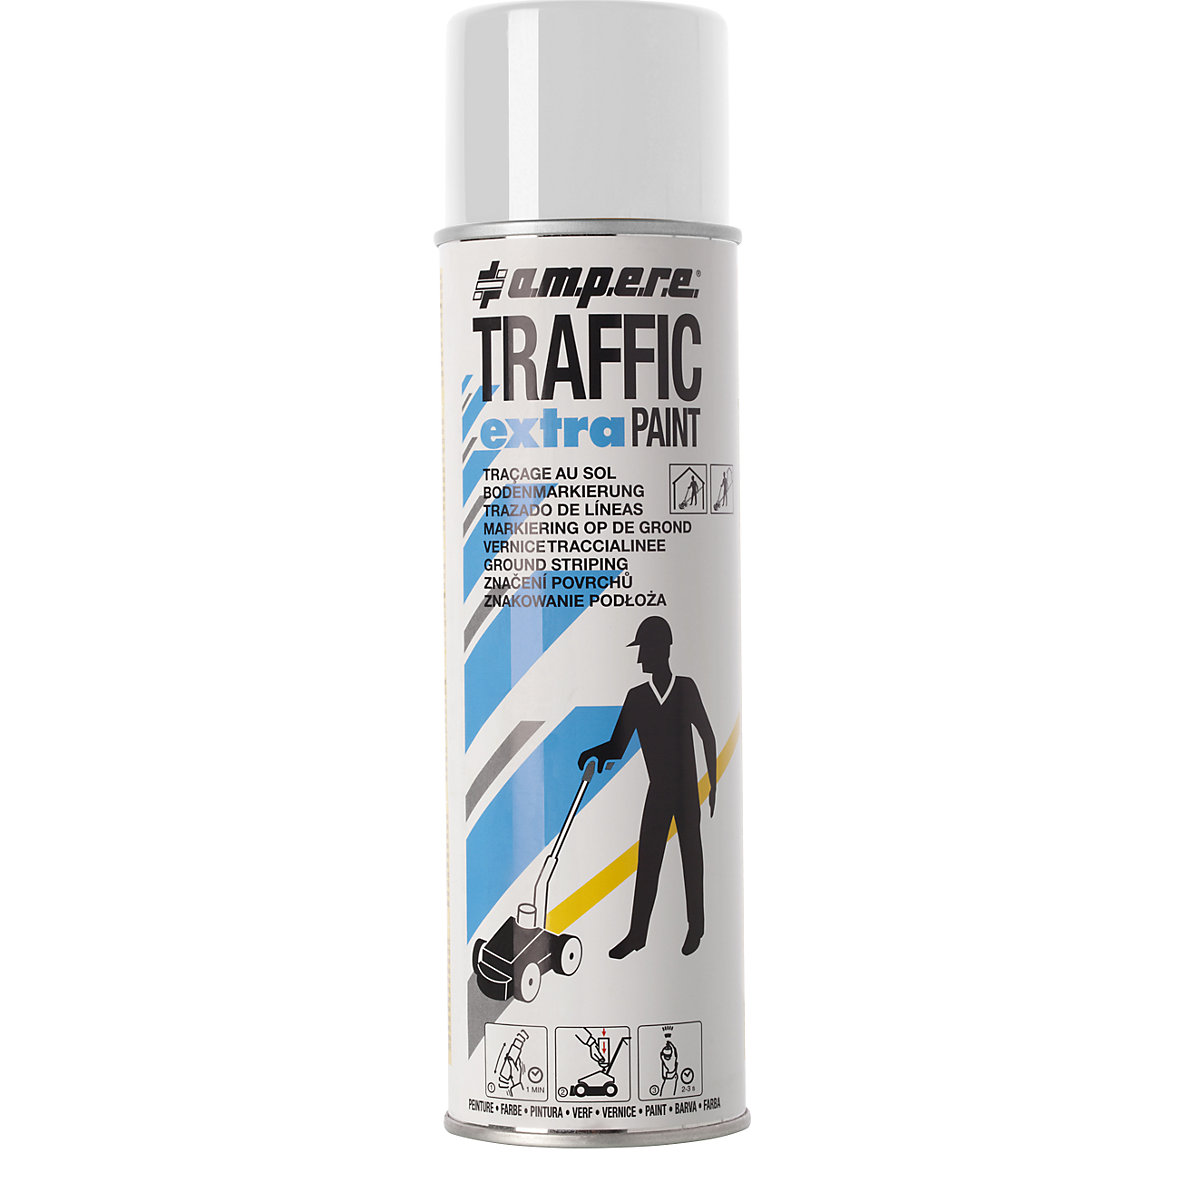 Pintura de marcaje Traffic extra Paint® para solicitaciones altas - Ampere